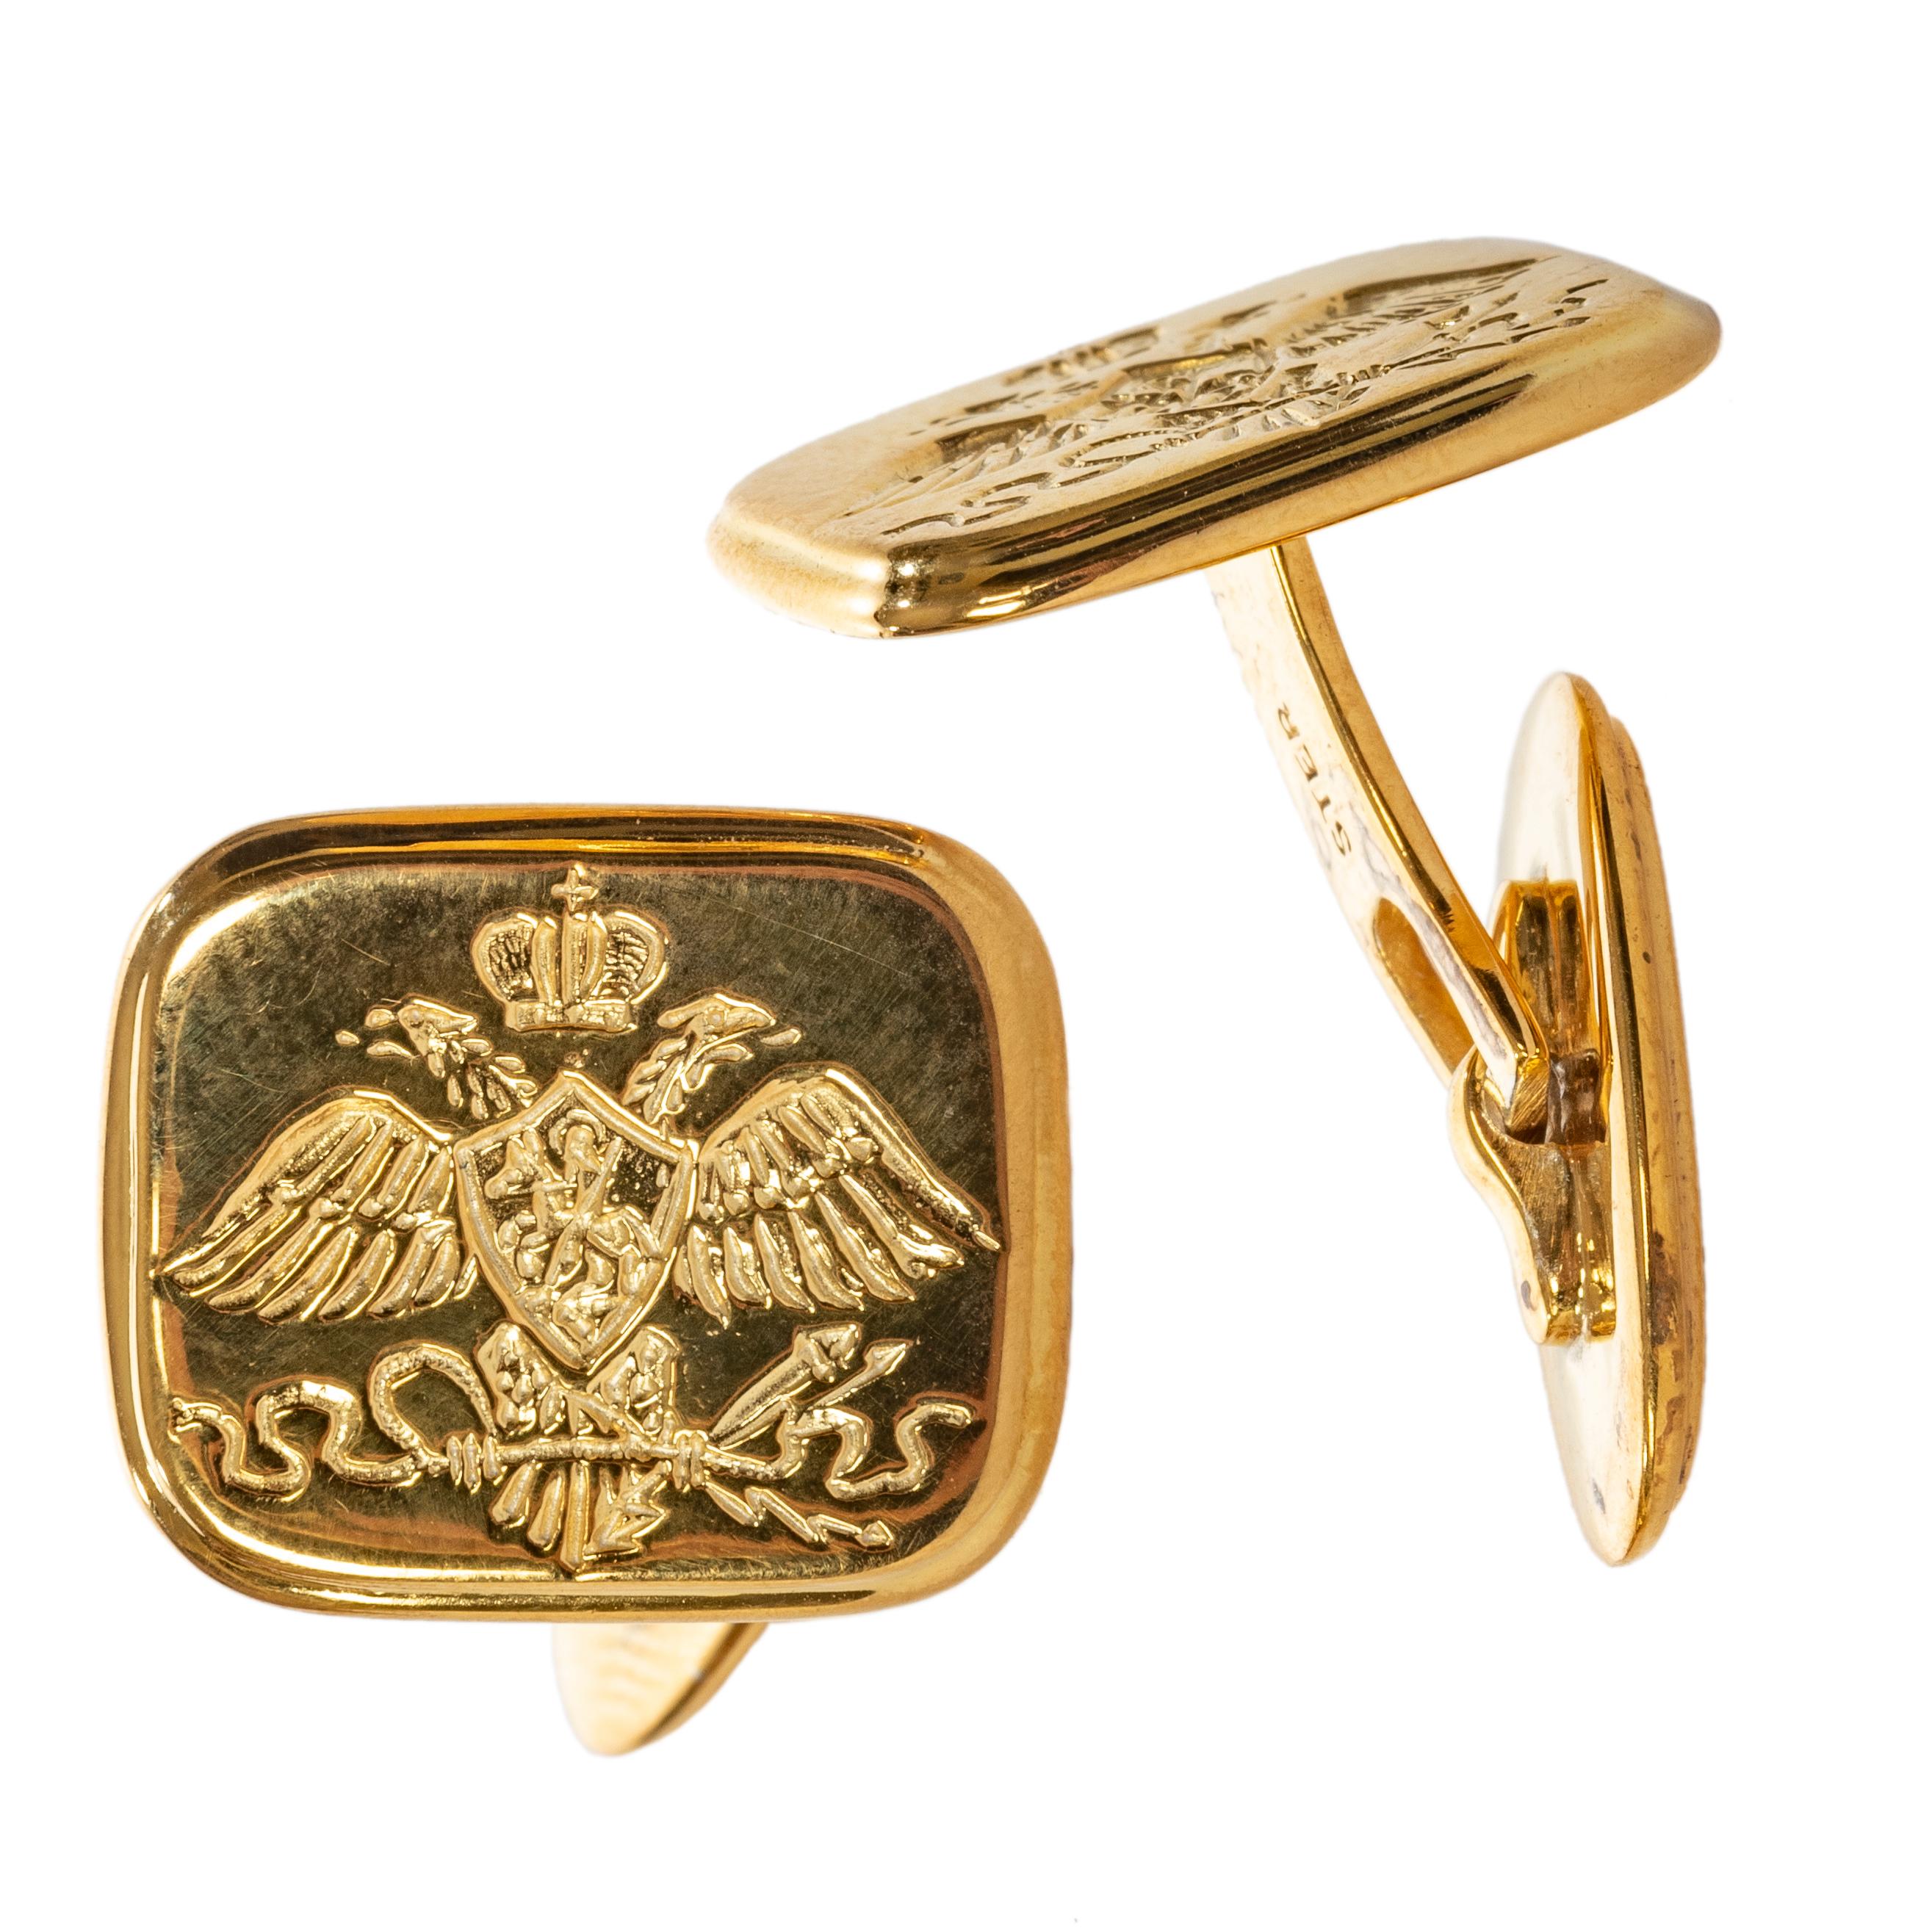 Boutons de manchette en argent doré représentant l'aigle impérial russe aux ailes repliées sous une couronne des Romanov dans la version néoclassique rendue célèbre par le tsar Nicolas Ier (1825-55). Inspiré d'un modèle européen de boutons de